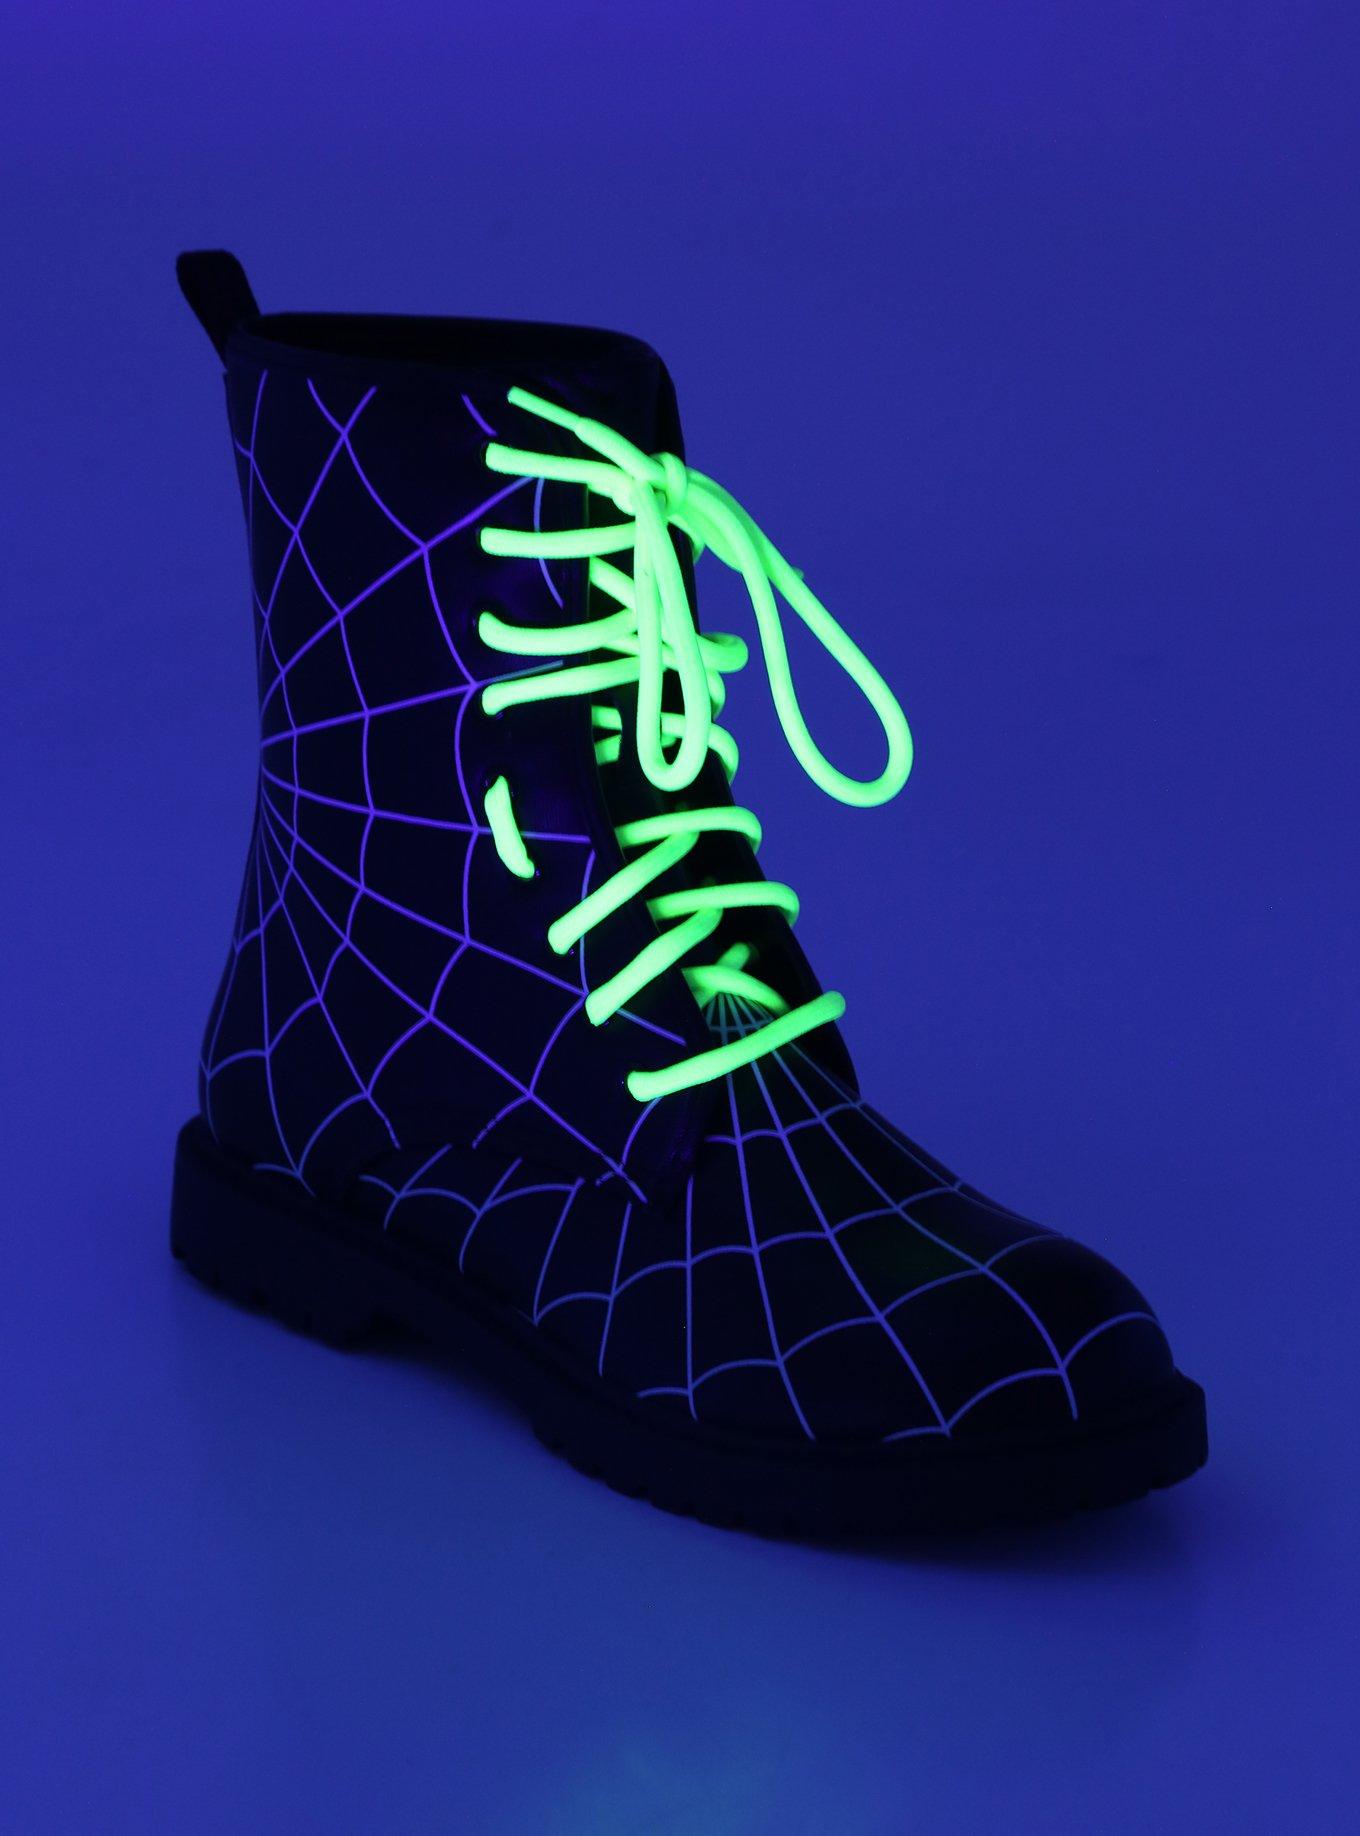 Spiderweb Combat Boot, MULTI, alternate